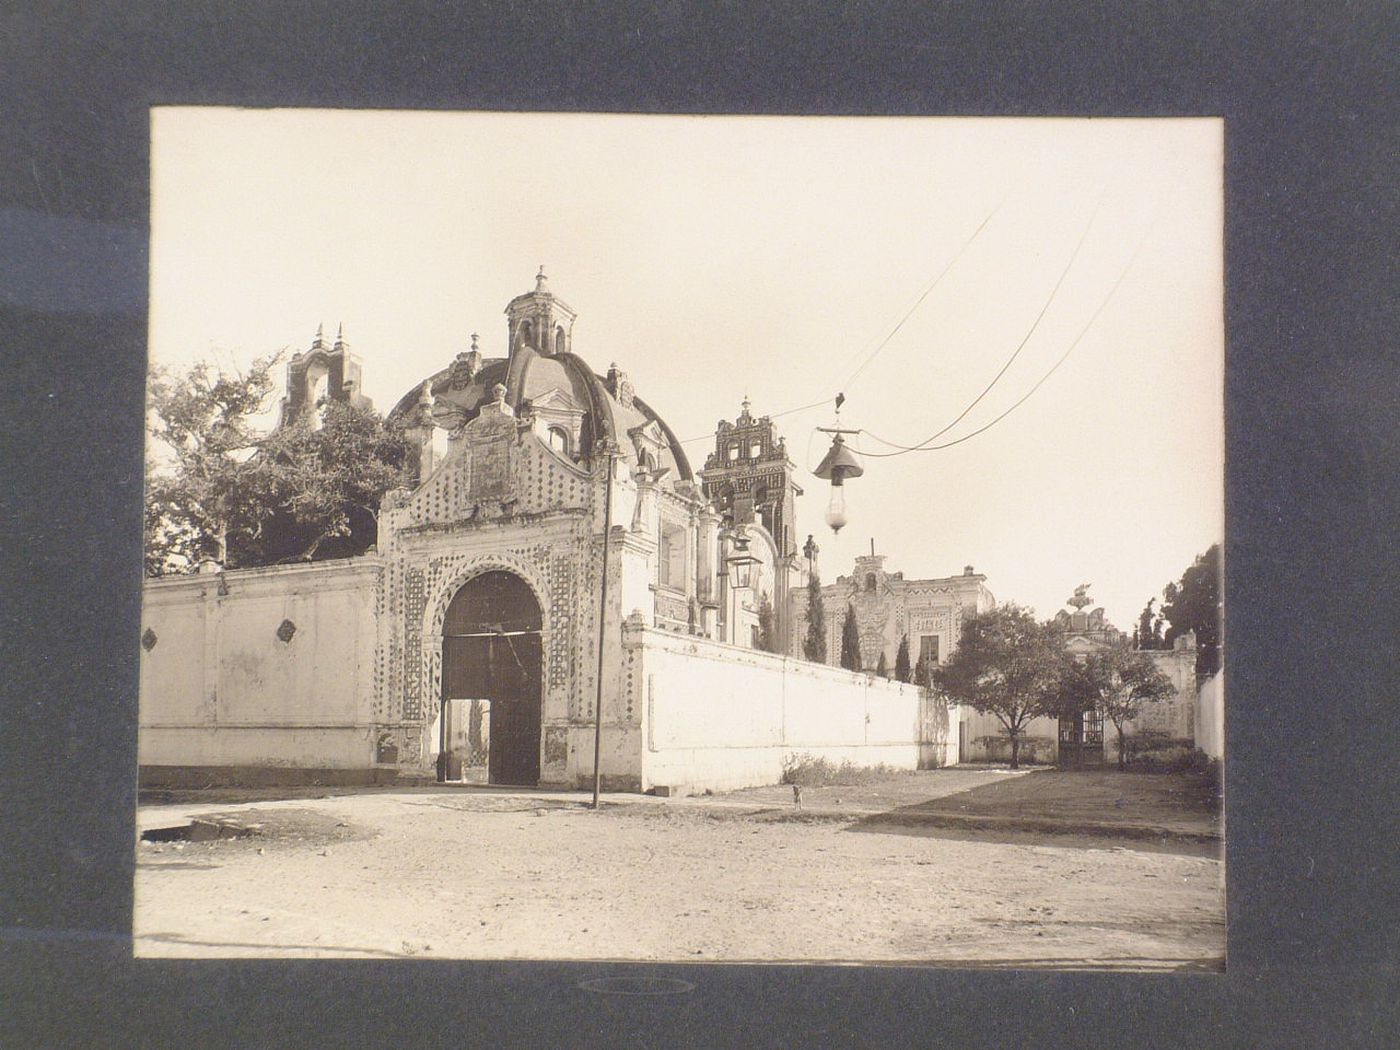 View of the Convento de Nuestra Señora del Carmen showing gateways and the dome of the Capilla de Santa Teresa de Jesús, Puebla, Mexico